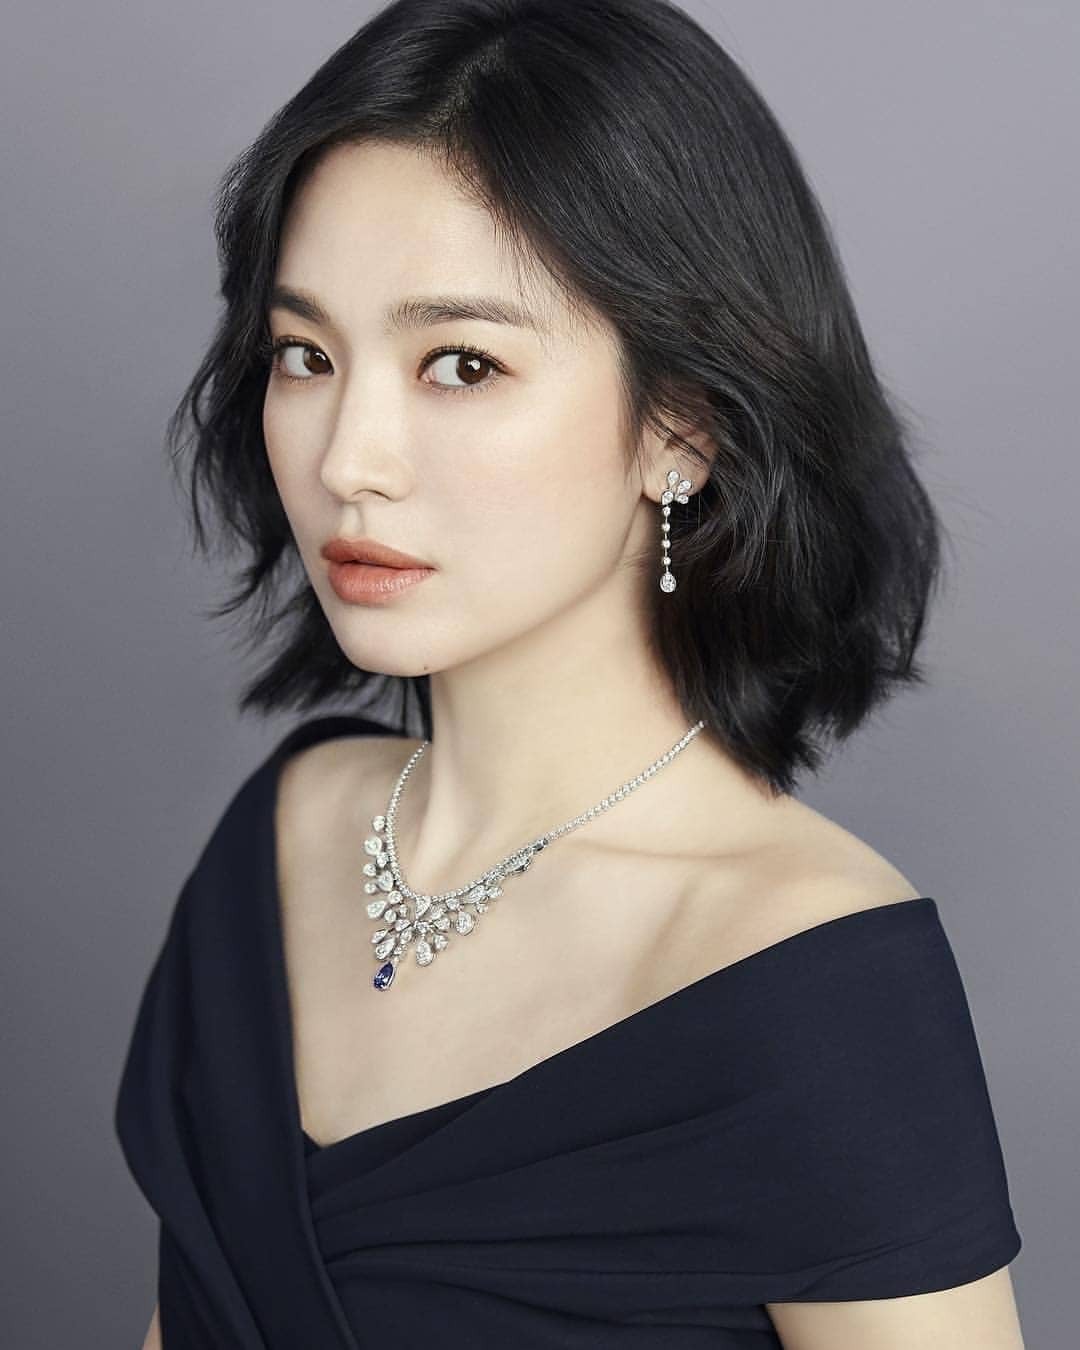 Song Hye Kyo đánh mất hình ảnh ngọc nữ